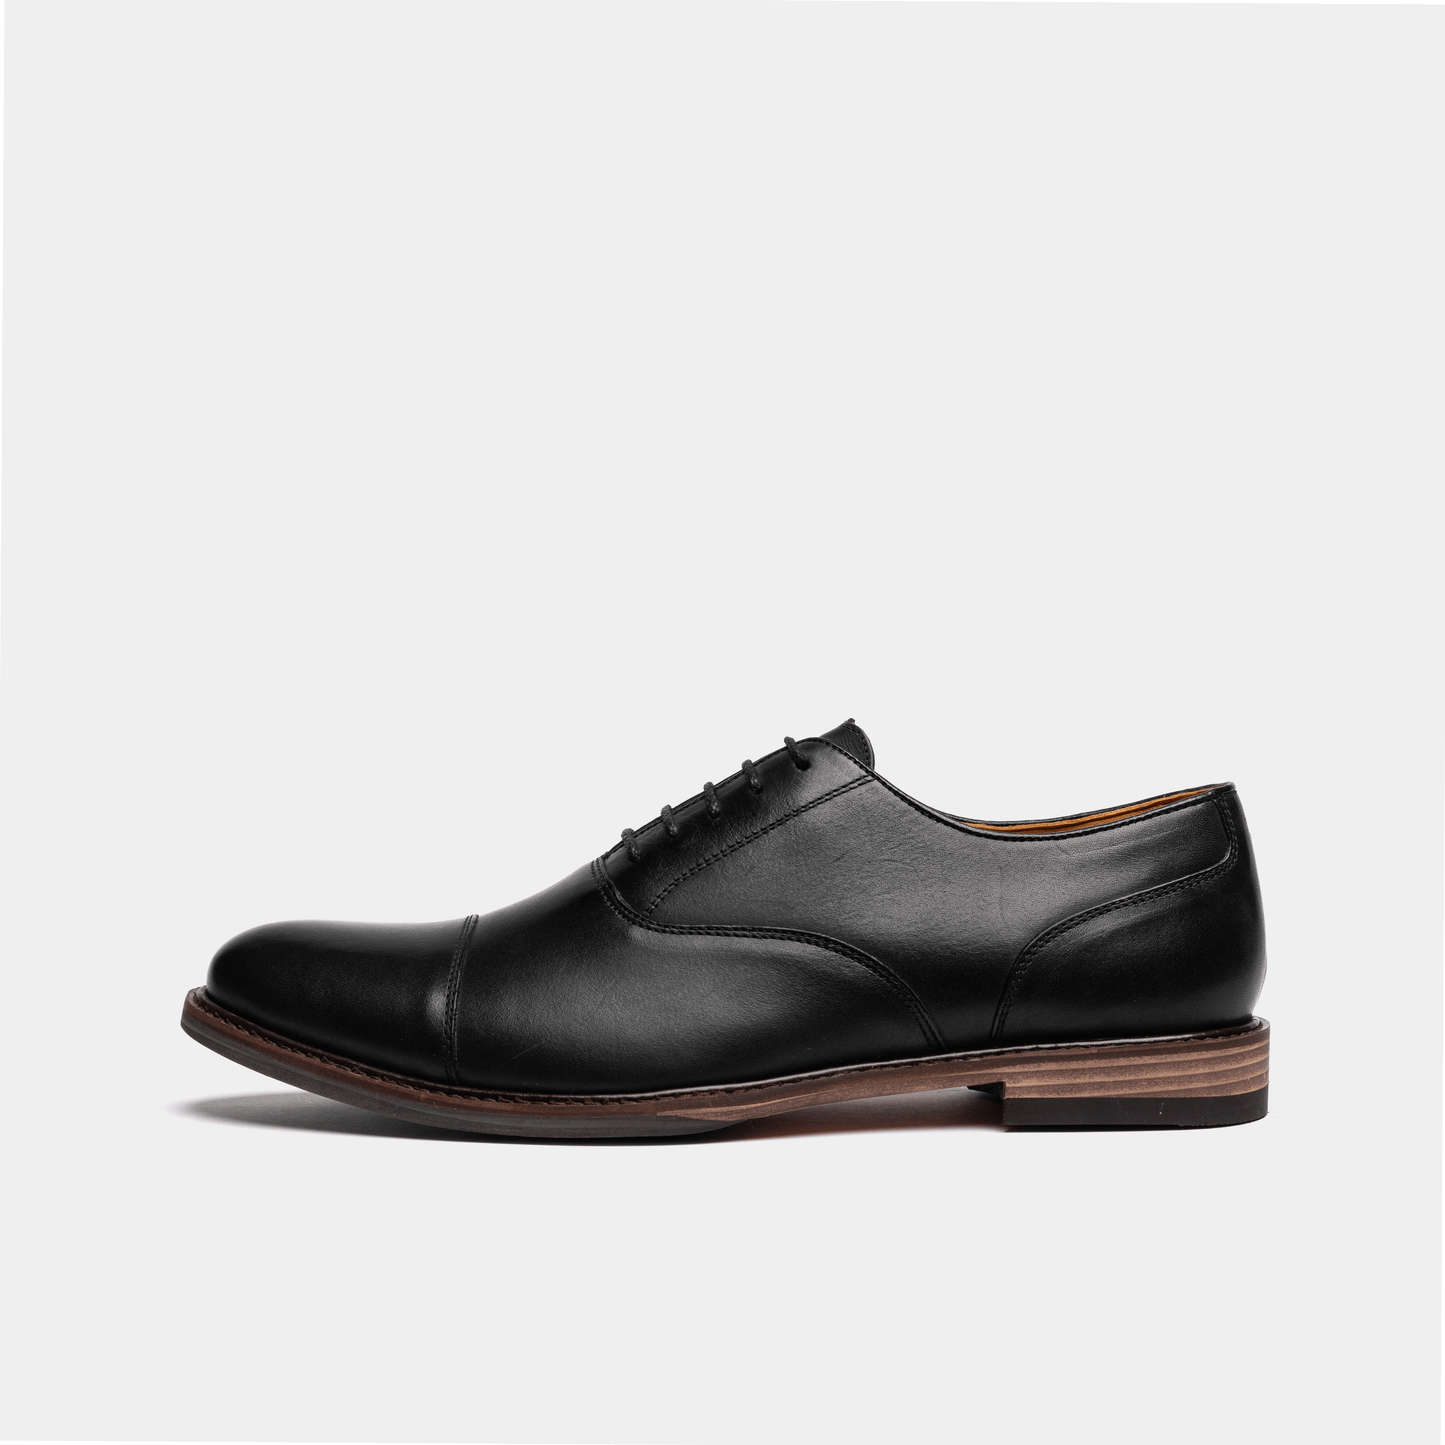 MAUDSLEY // BLACK-MEN'S SHOE | LANX Proper Men's Shoes